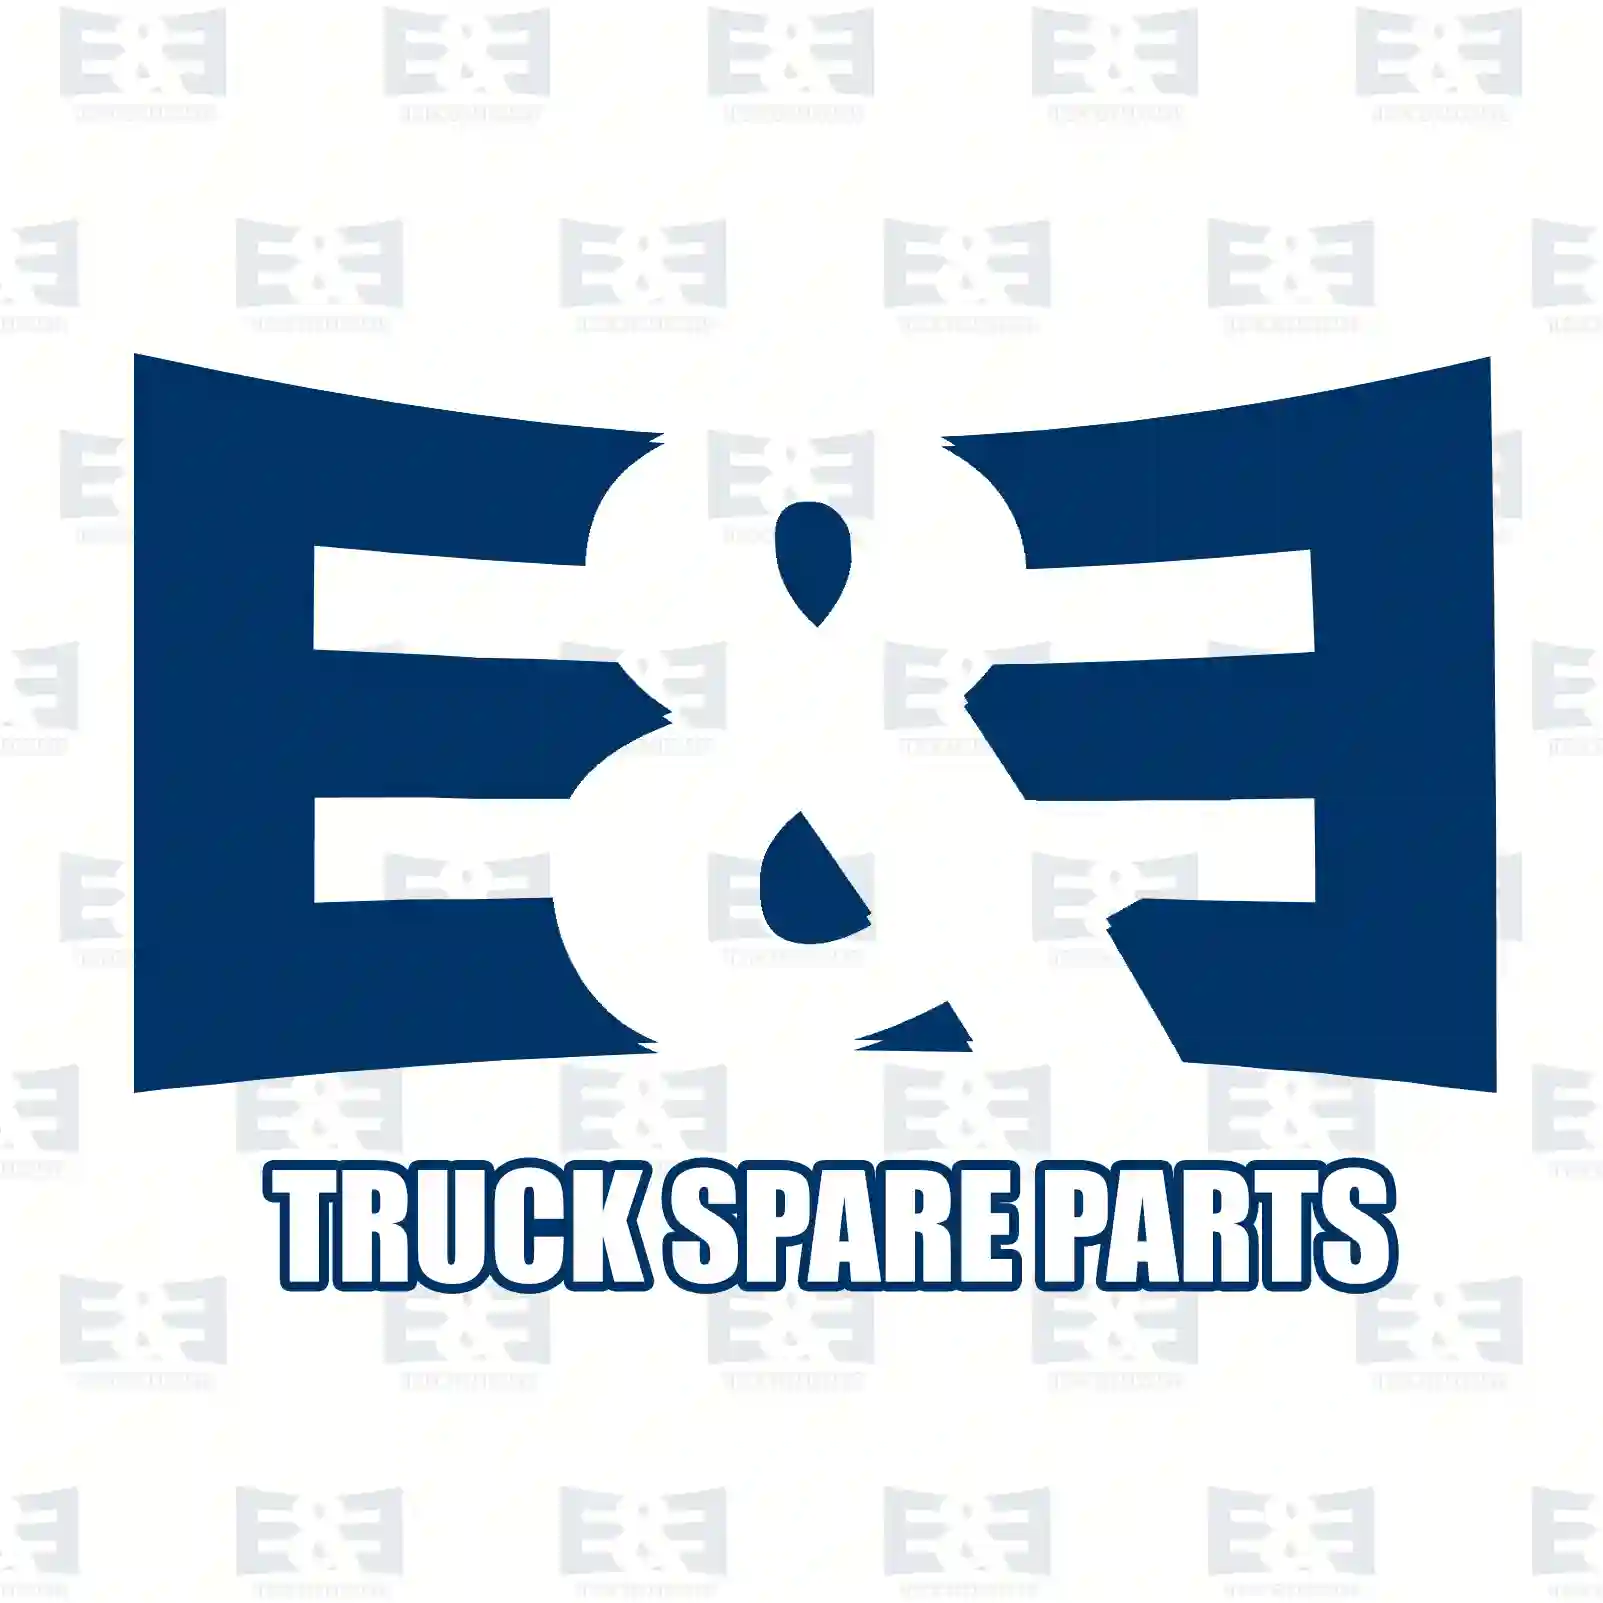 Wiper linkage, 2E2289008, 9949393, 9949393 ||  2E2289008 E&E Truck Spare Parts | Truck Spare Parts, Auotomotive Spare Parts Wiper linkage, 2E2289008, 9949393, 9949393 ||  2E2289008 E&E Truck Spare Parts | Truck Spare Parts, Auotomotive Spare Parts